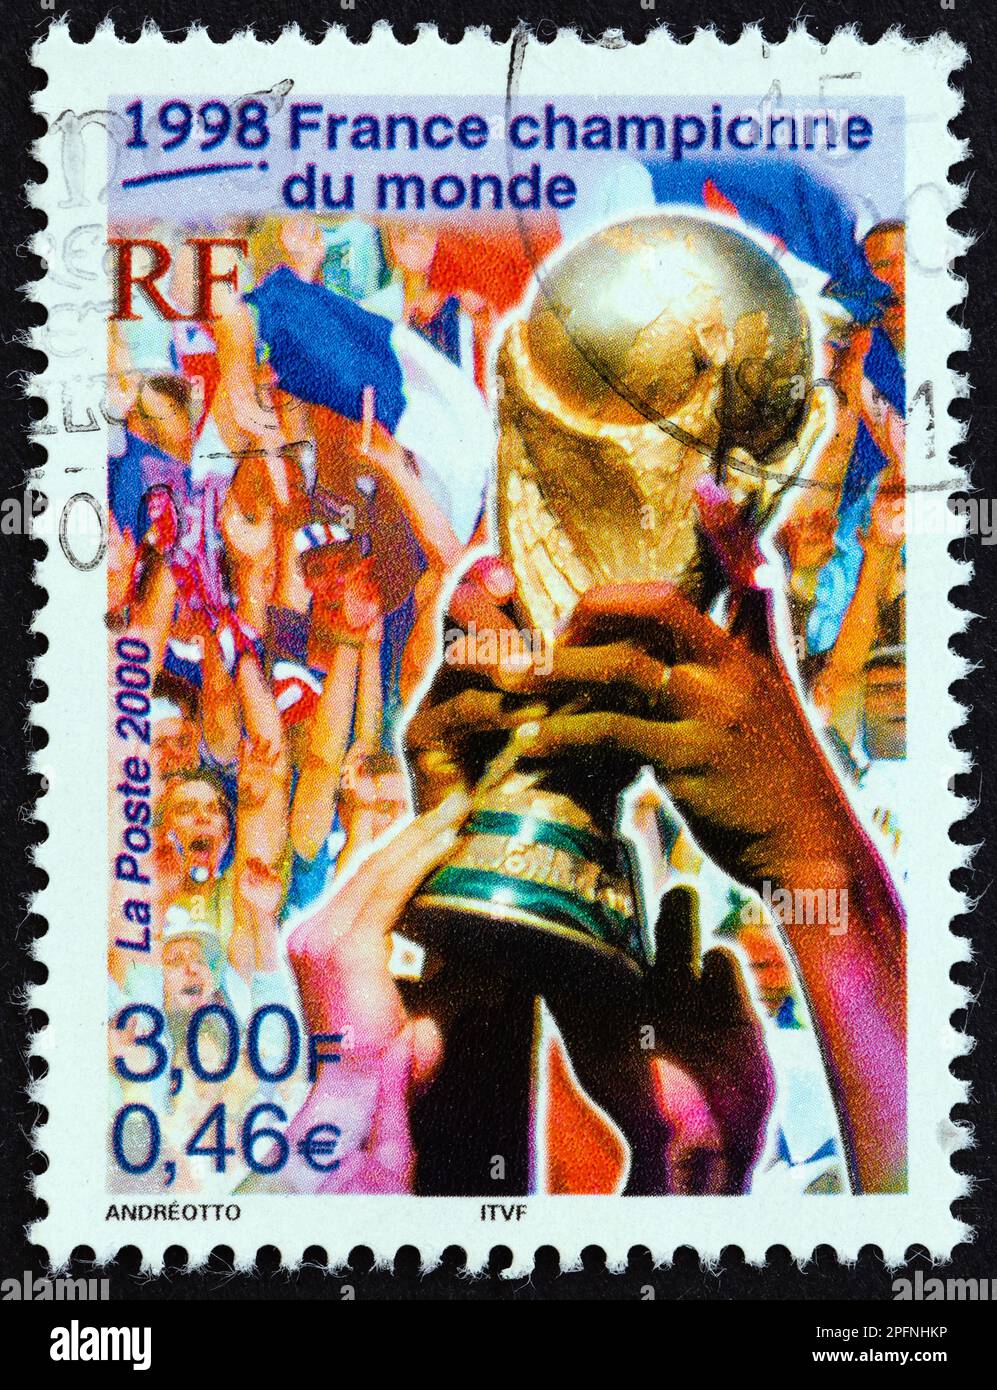 FRANCE - VERS 2000 : un timbre imprimé en France montre le Trophée de la coupe du monde de football (France, champions du monde, 1998), vers 2000. Banque D'Images